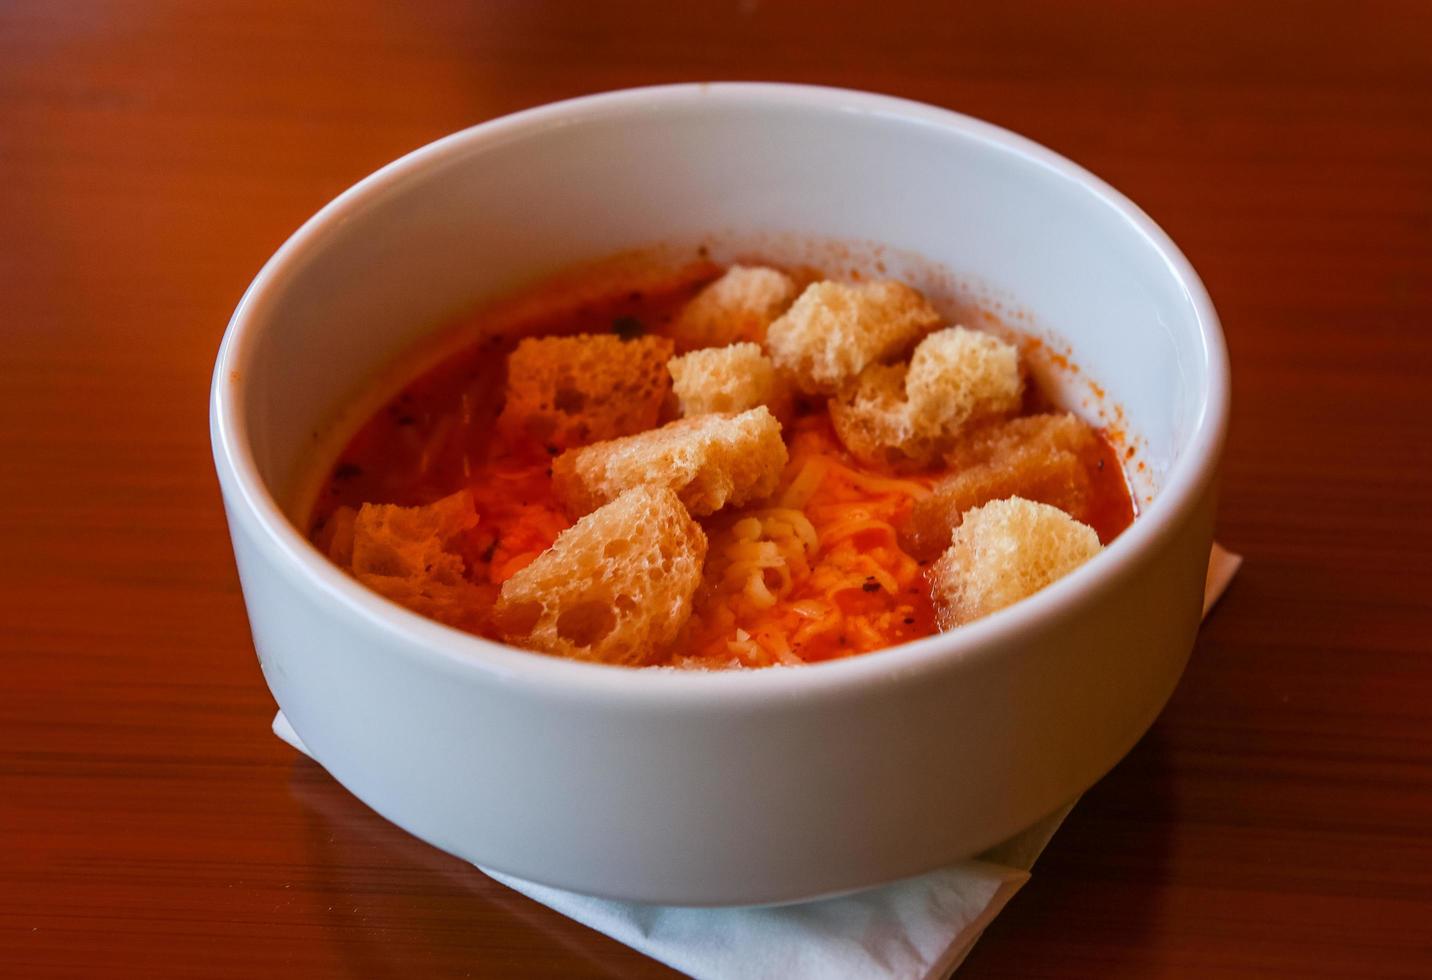 tomat soppa i de skål foto